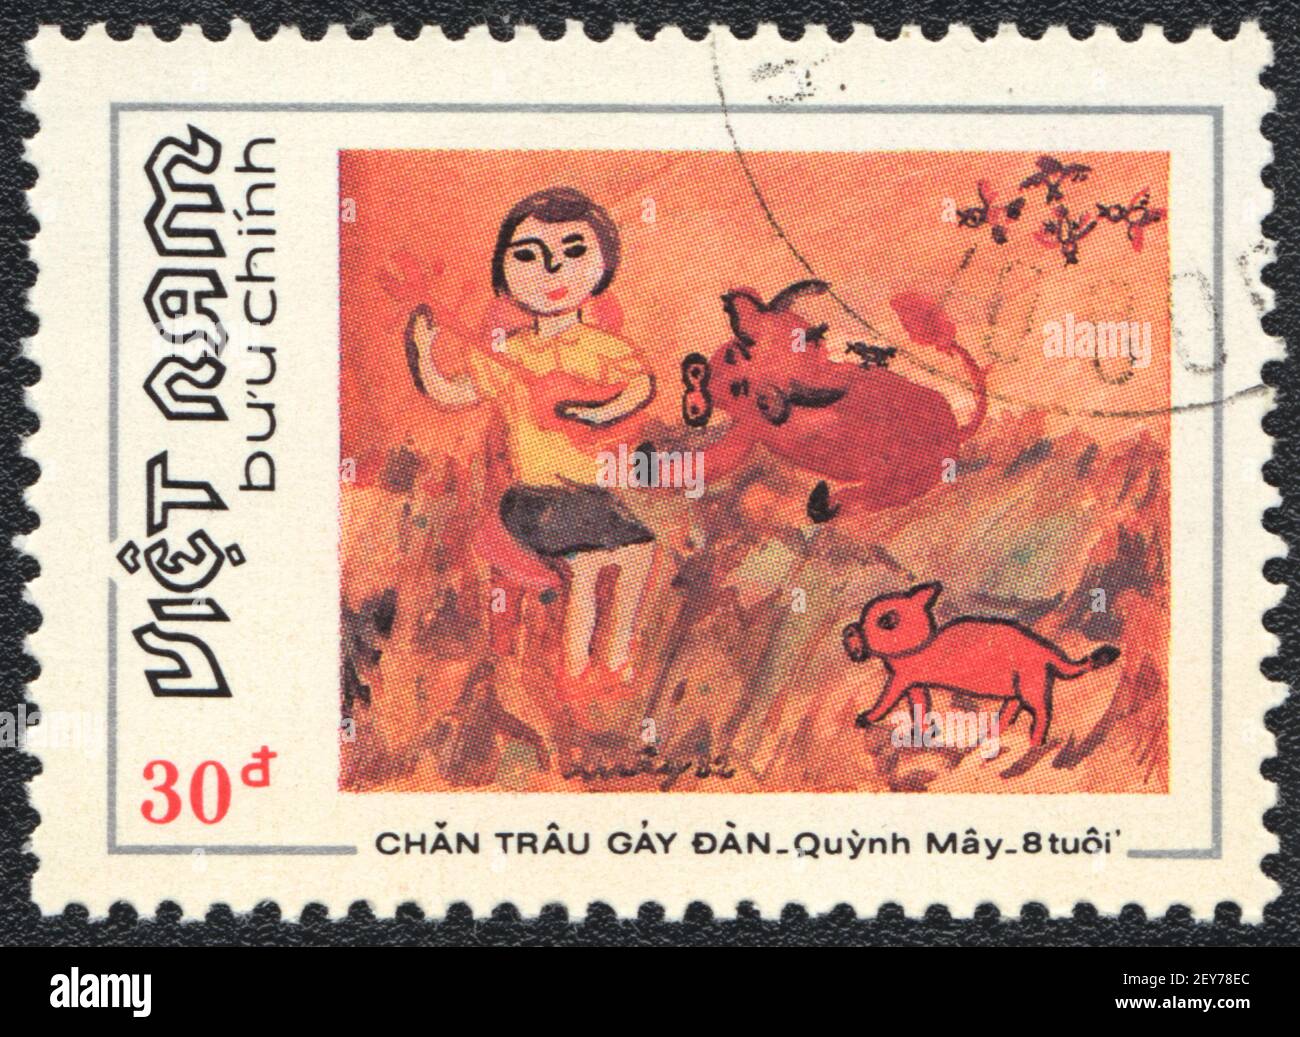 Briefmarke. Mädchen spielt Musik in der ländlichen, aus der Serie Bild von einem Kind gemalt, Vietnam, um 1982 Stockfoto